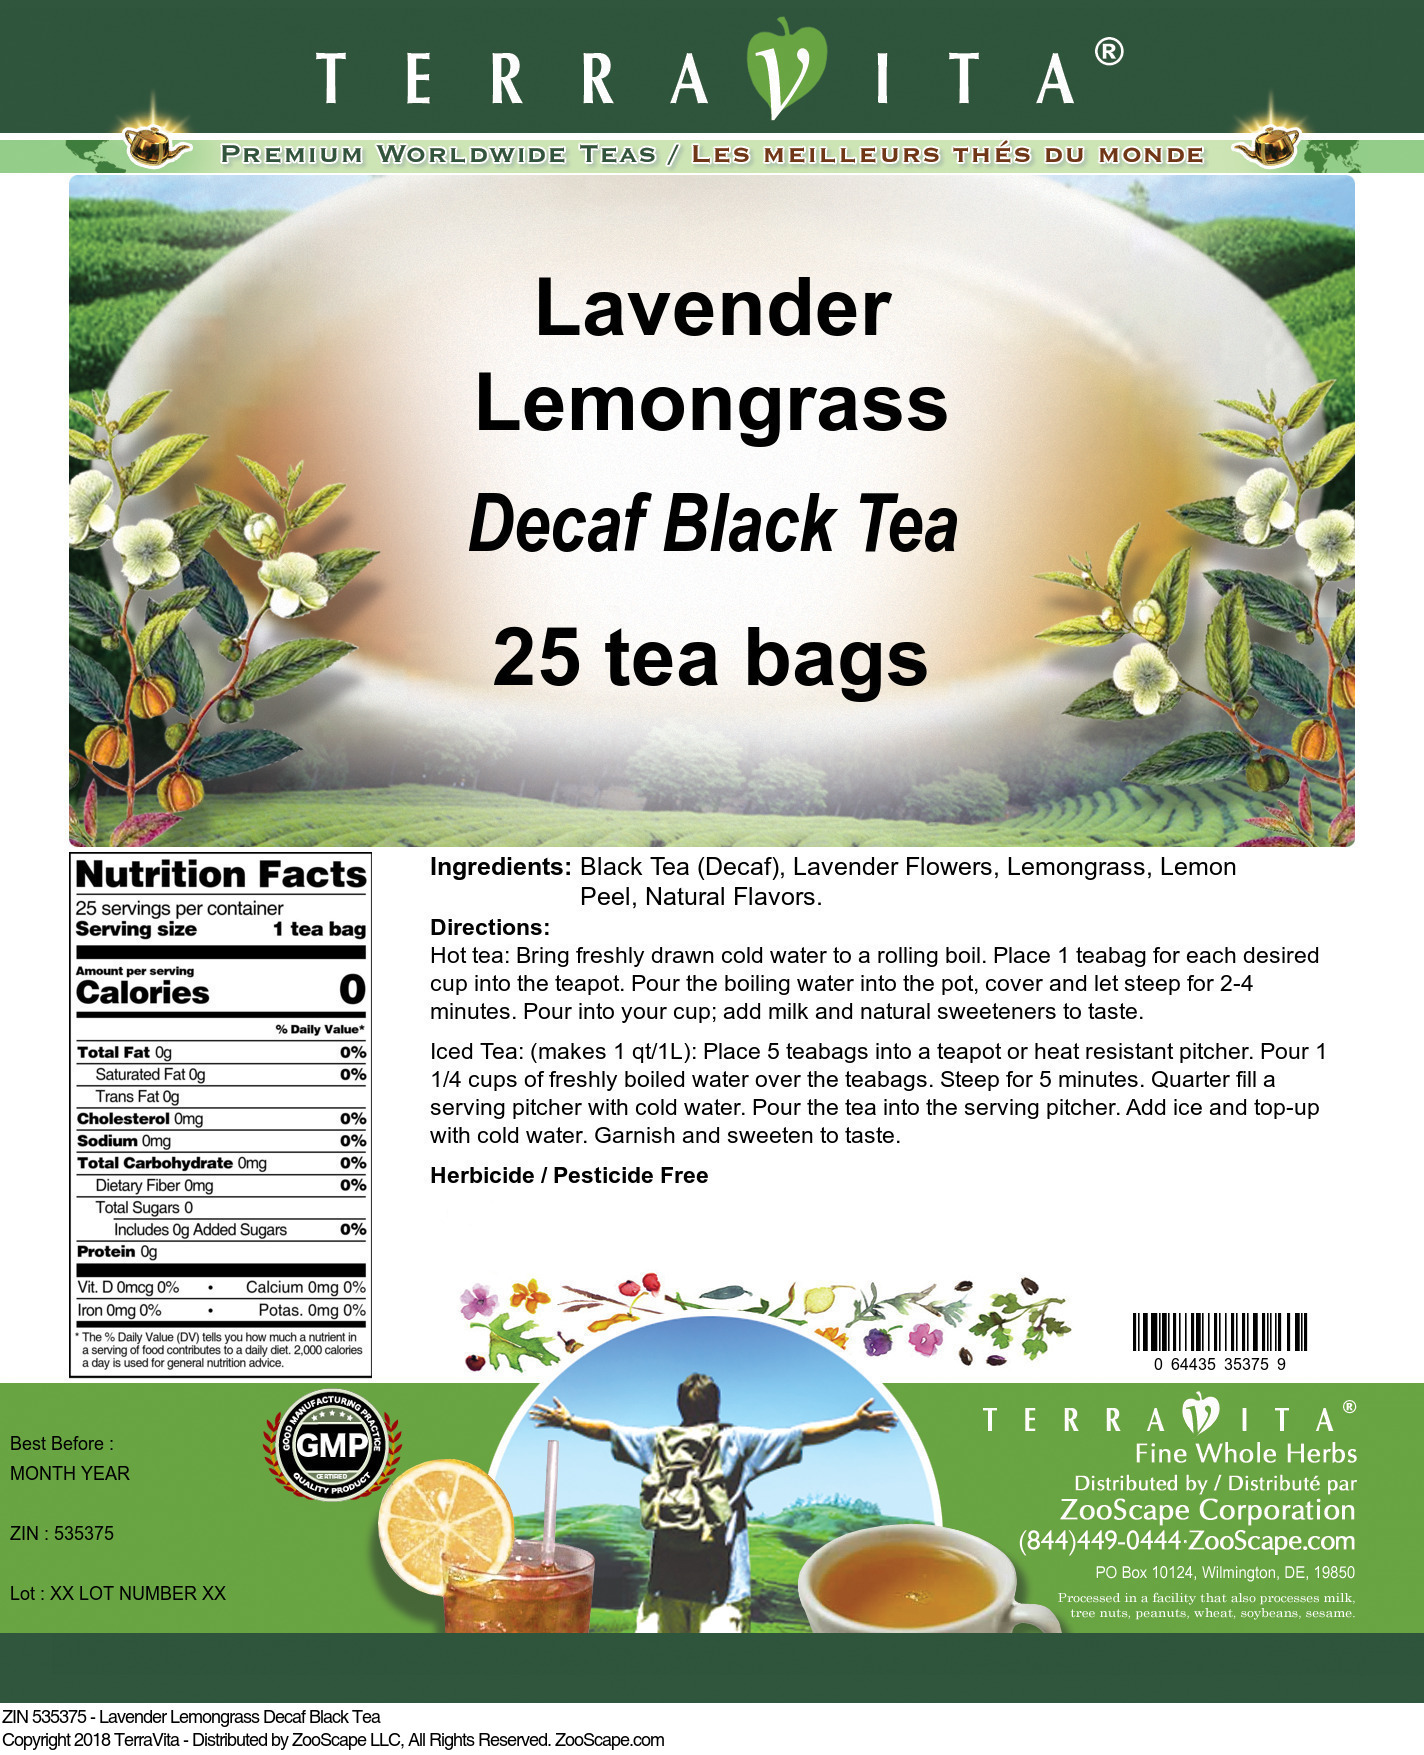 Lavender Lemongrass Decaf Black Tea - Label